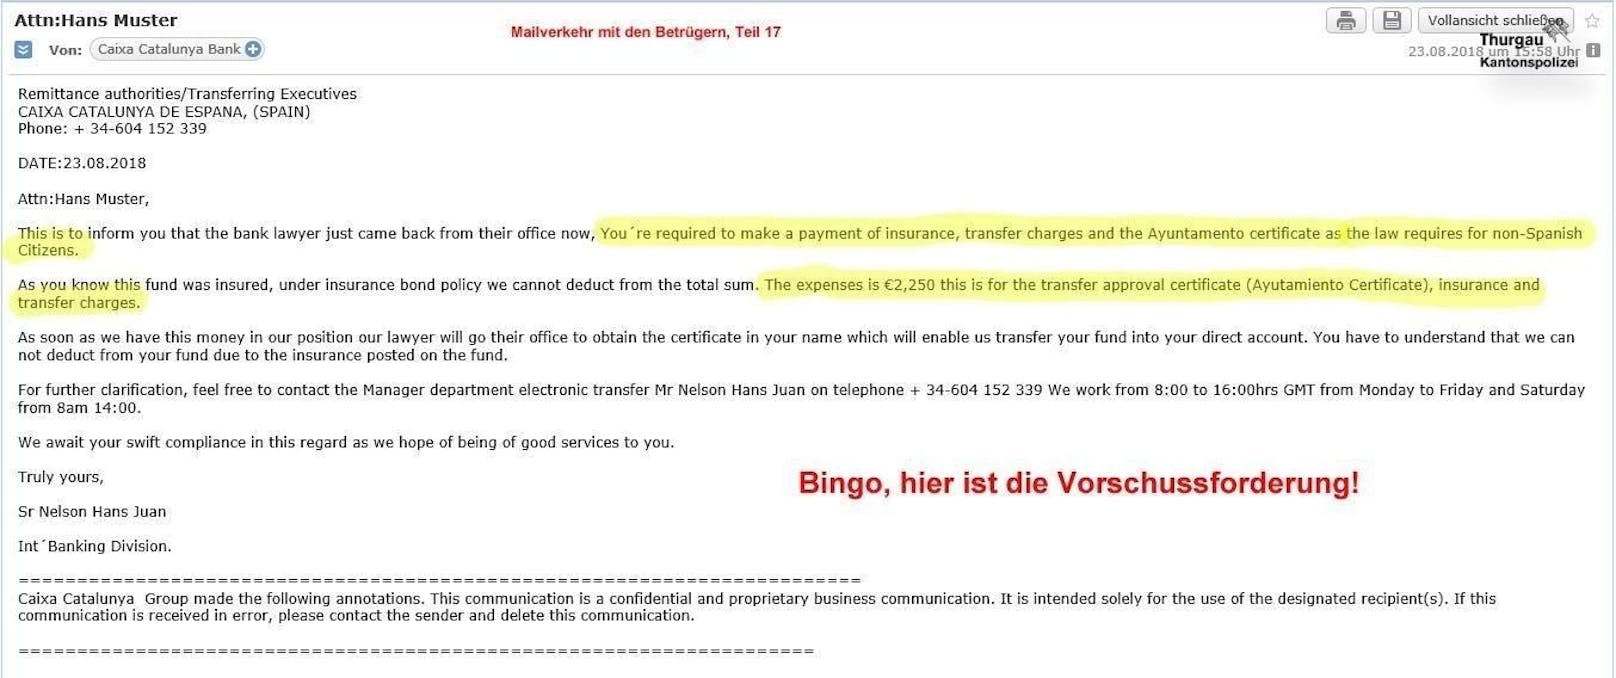 Und dann - nach knapp zwei Wochen - kommt sie: Die erwartete Vorschussforderung. Damit ist der Kantonspolizei Thurgau gelungen, was sie mit diesem Mail-Verkehr beweisen wollten: Eine der häufigsten Betrüger-Maschen.